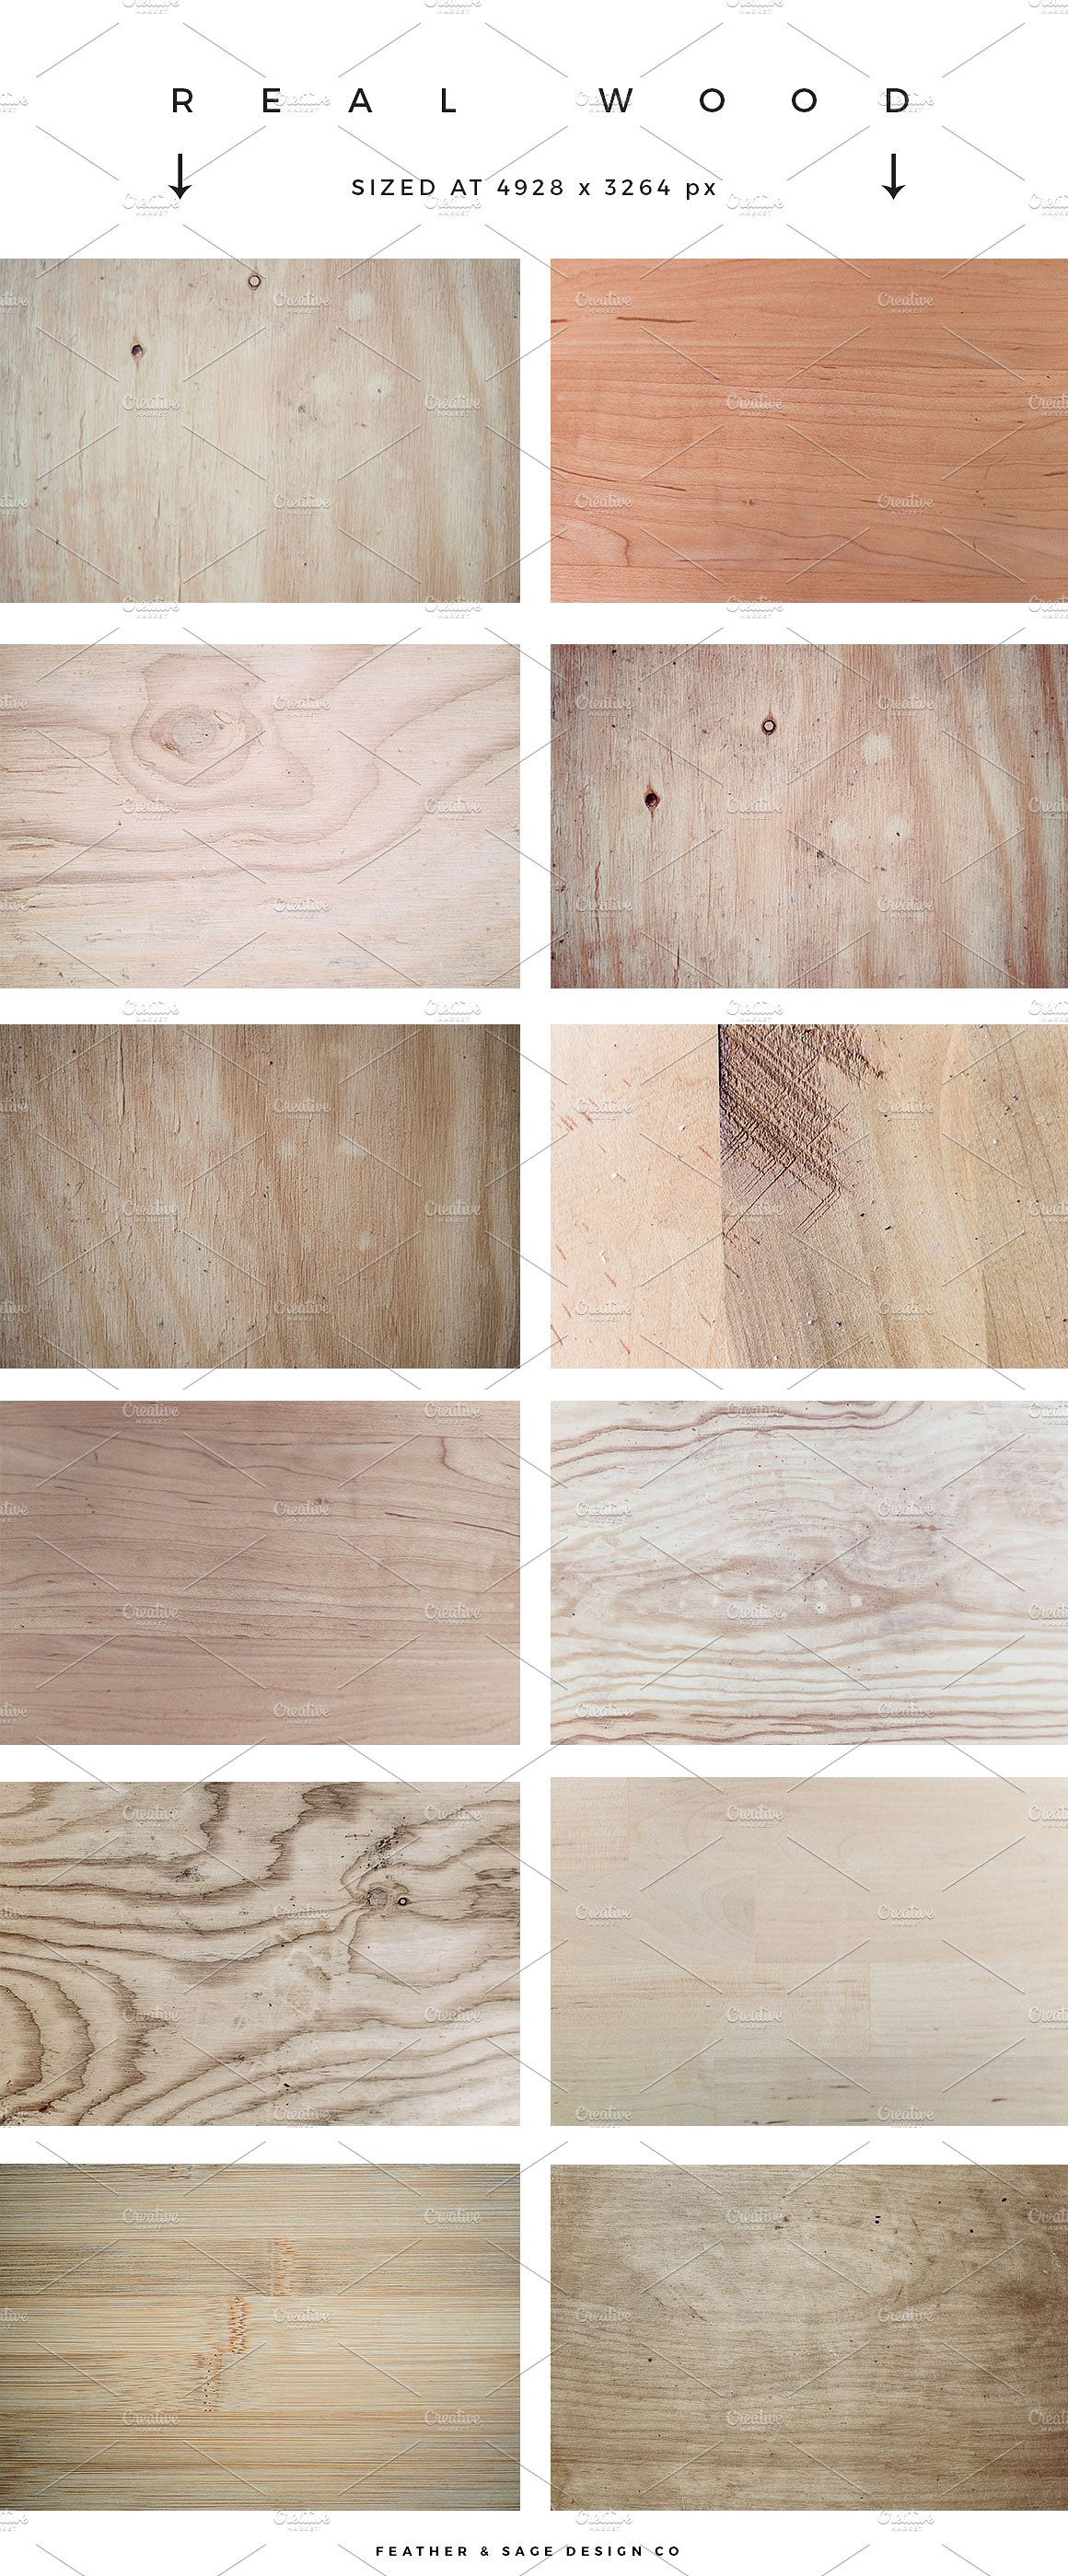 实木背景纹理素材 Real Wood Textures #2